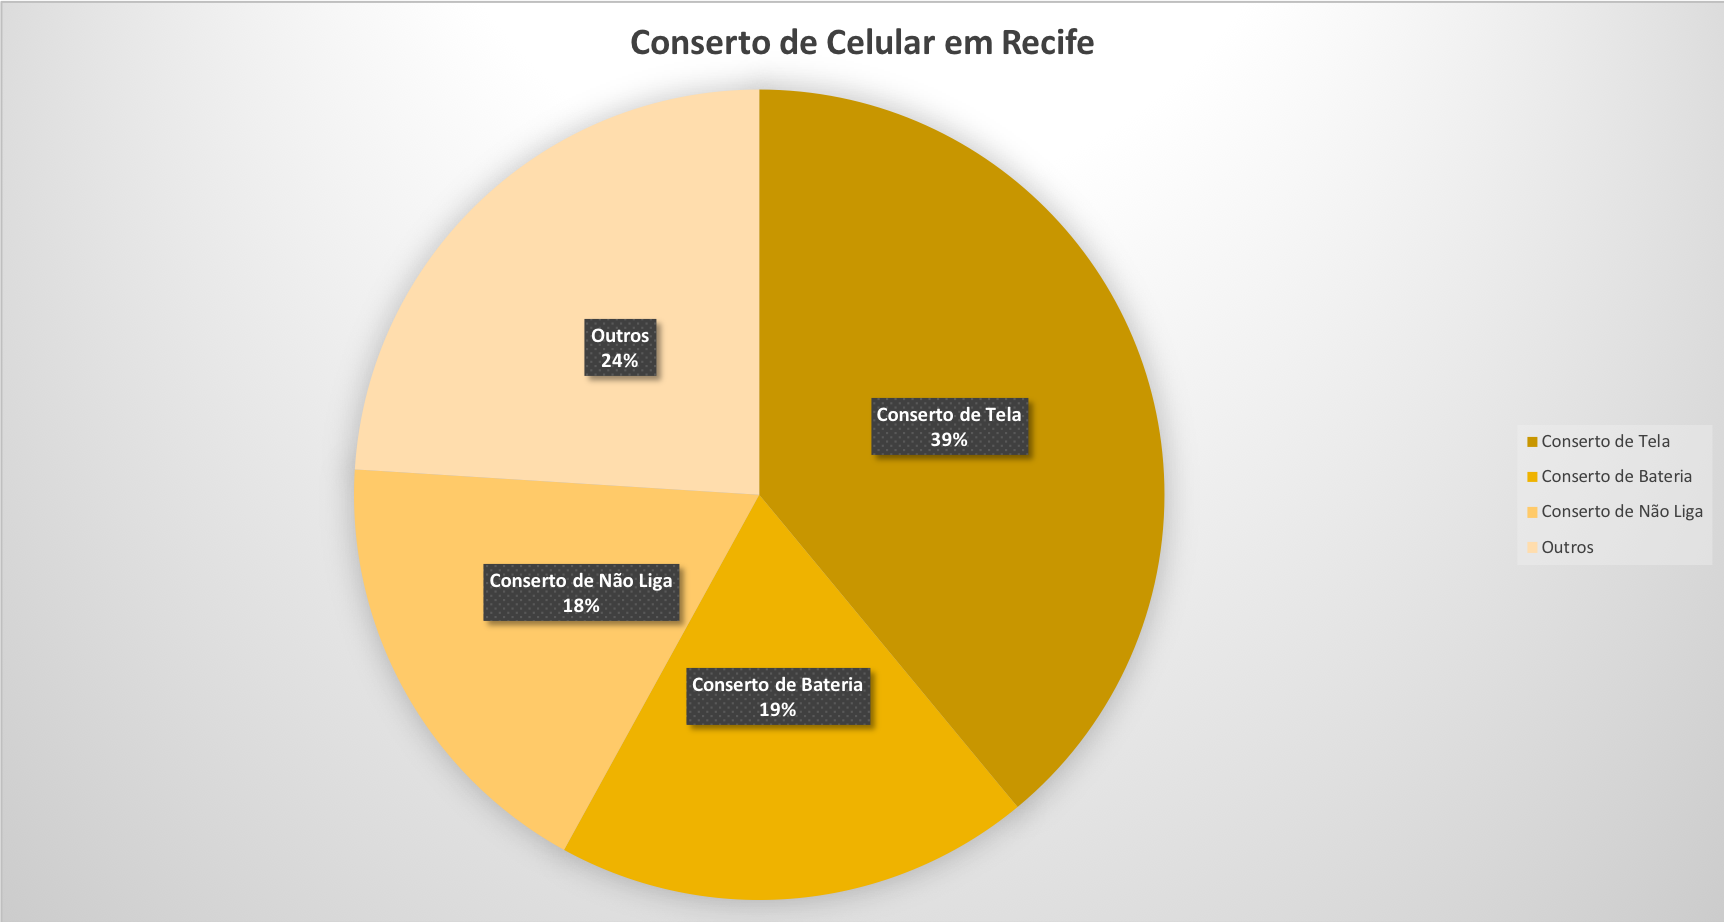 Conserto de Celular em Recife - Grafico de Defeito